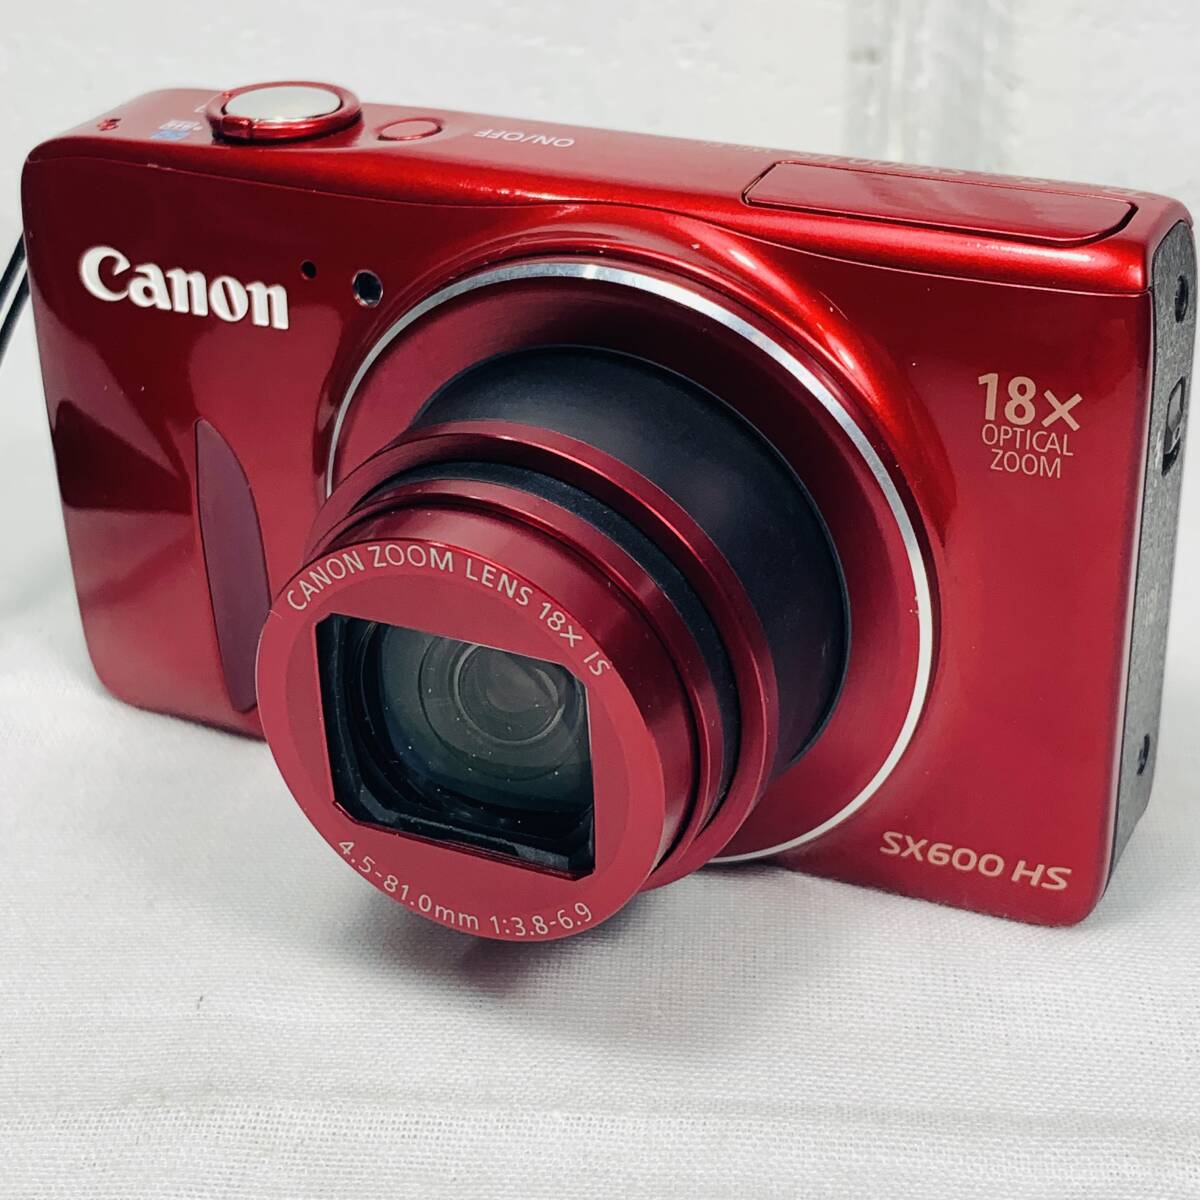 Canon キャノン デジタルカメラ PowerShot SX600 HS レッド 動作確認済み USED品 1円スタート _画像9